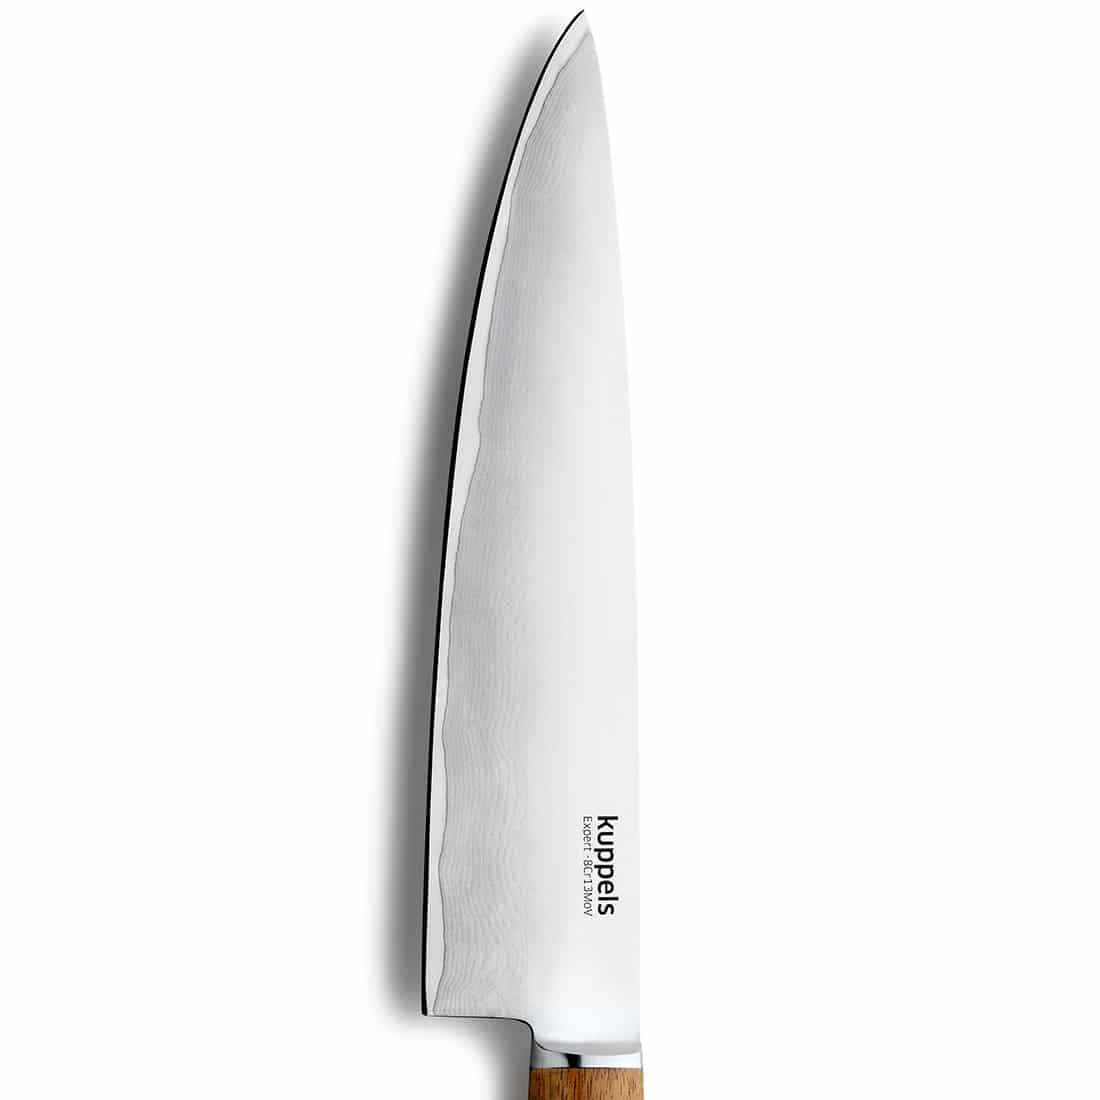 EXPERT Messerset 3-teilig holz Messerset mit Gravur